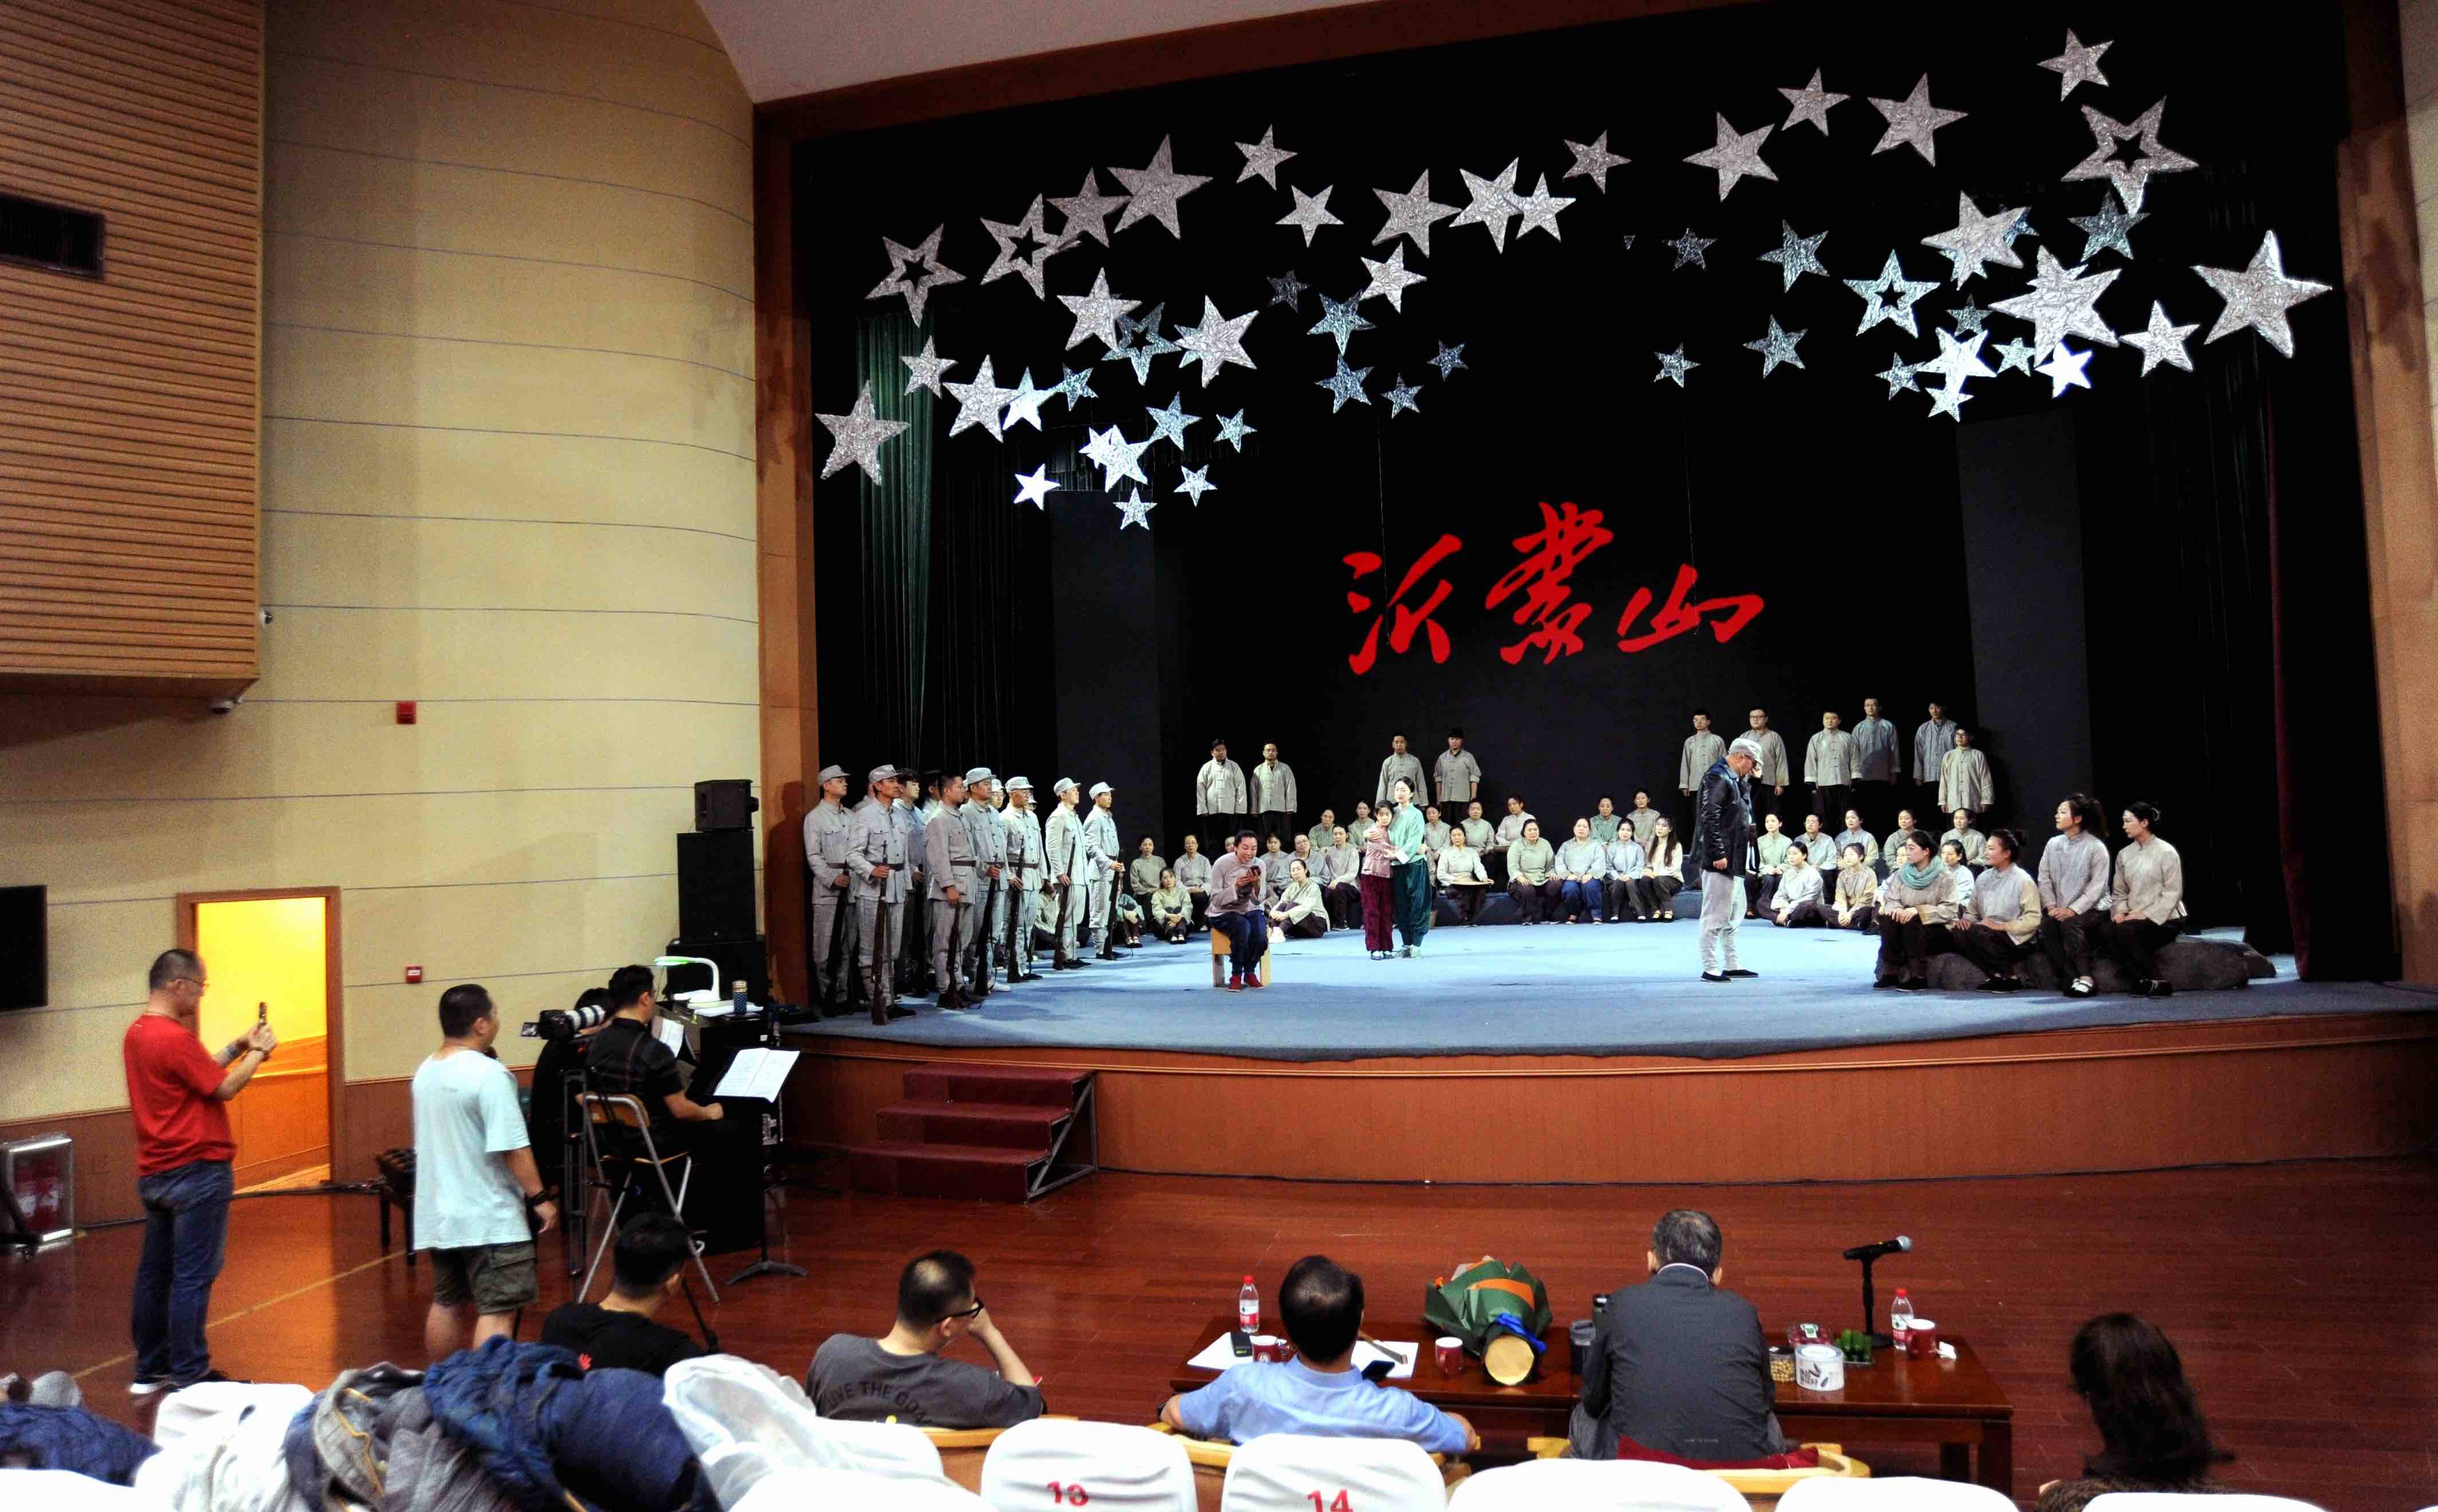 民族歌剧《沂蒙山》进行品质再提升排练 将参评第十三届中国艺术节冲击文华大奖